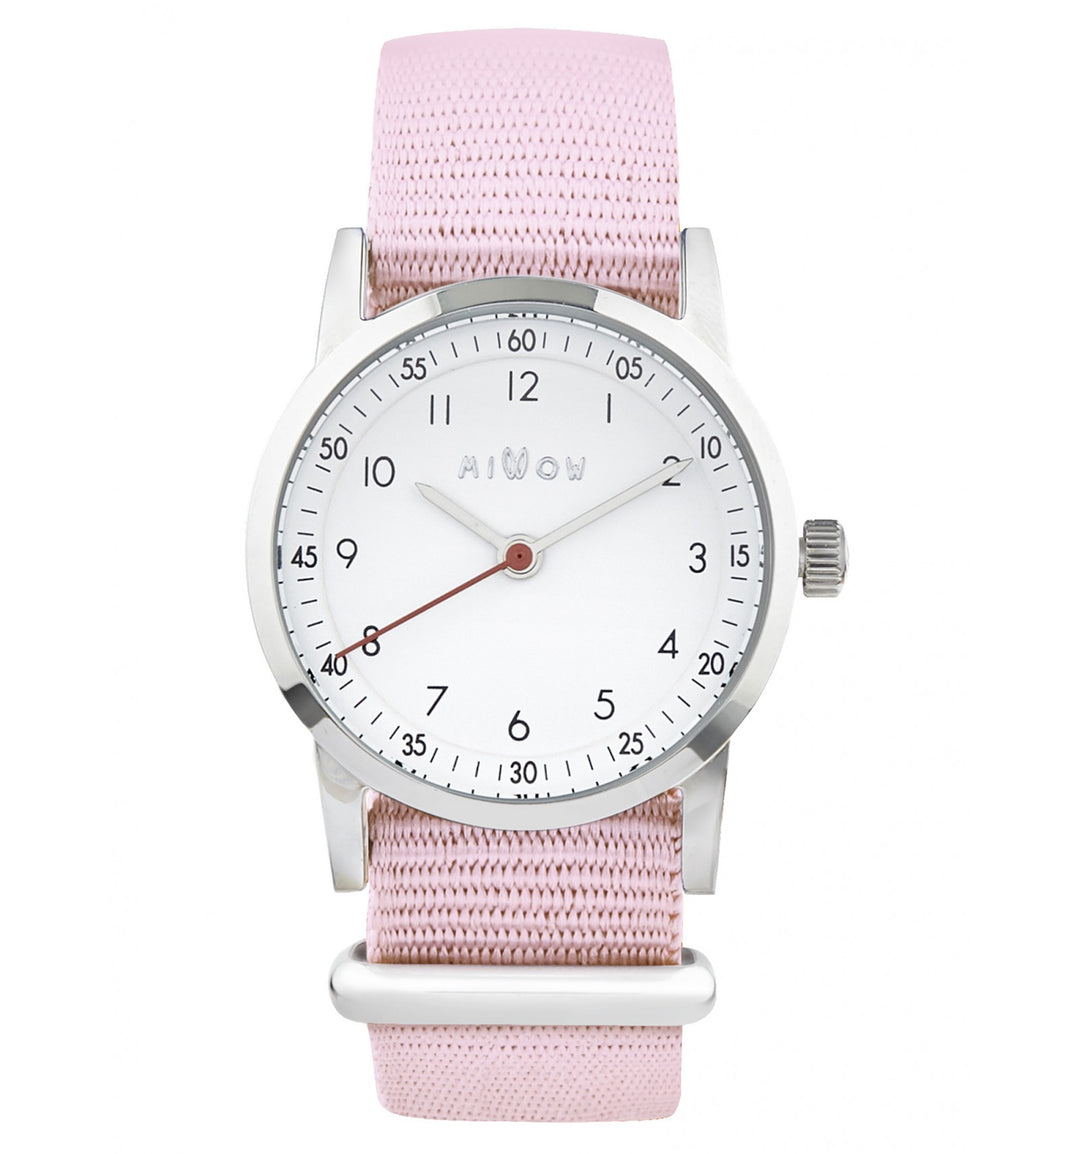 Classique Watch Pale Pink Strap - راقب